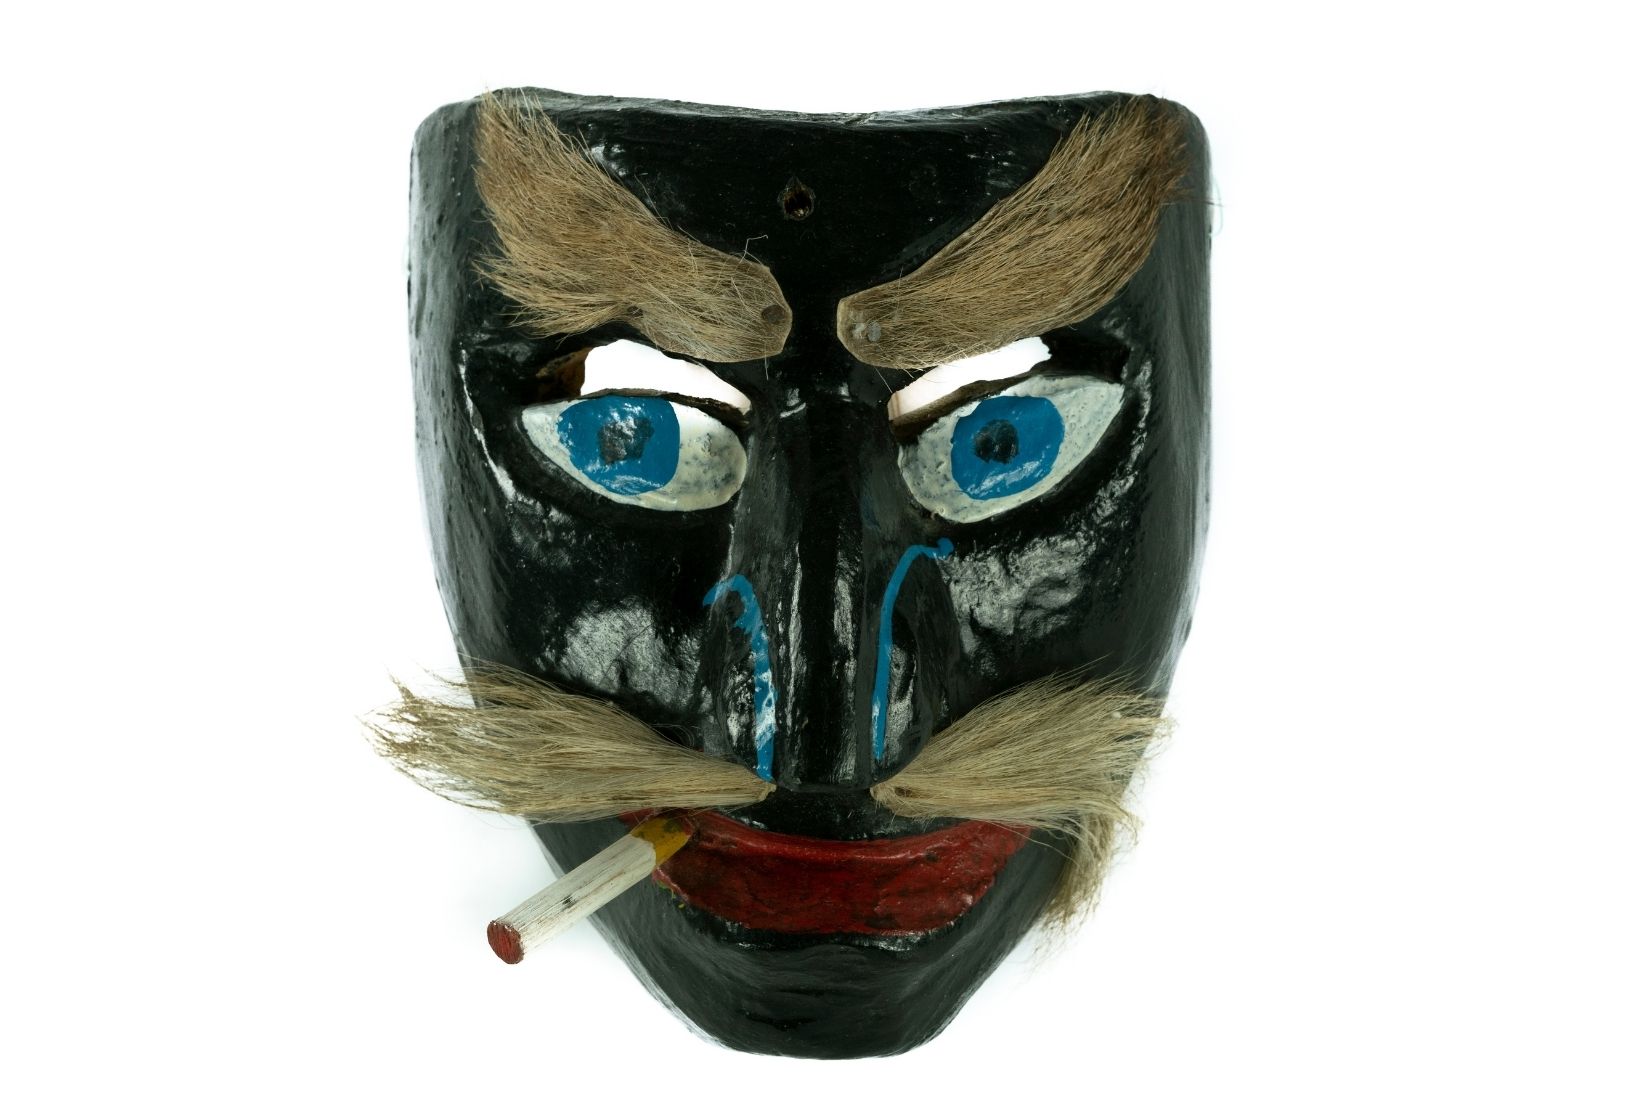 Máscara en madera tallada y policromada. Artesano y procedencia desconocidos. Col. Amparo Espinosa Rugarcía donada a AmigosMAP. (Foto: EKV).